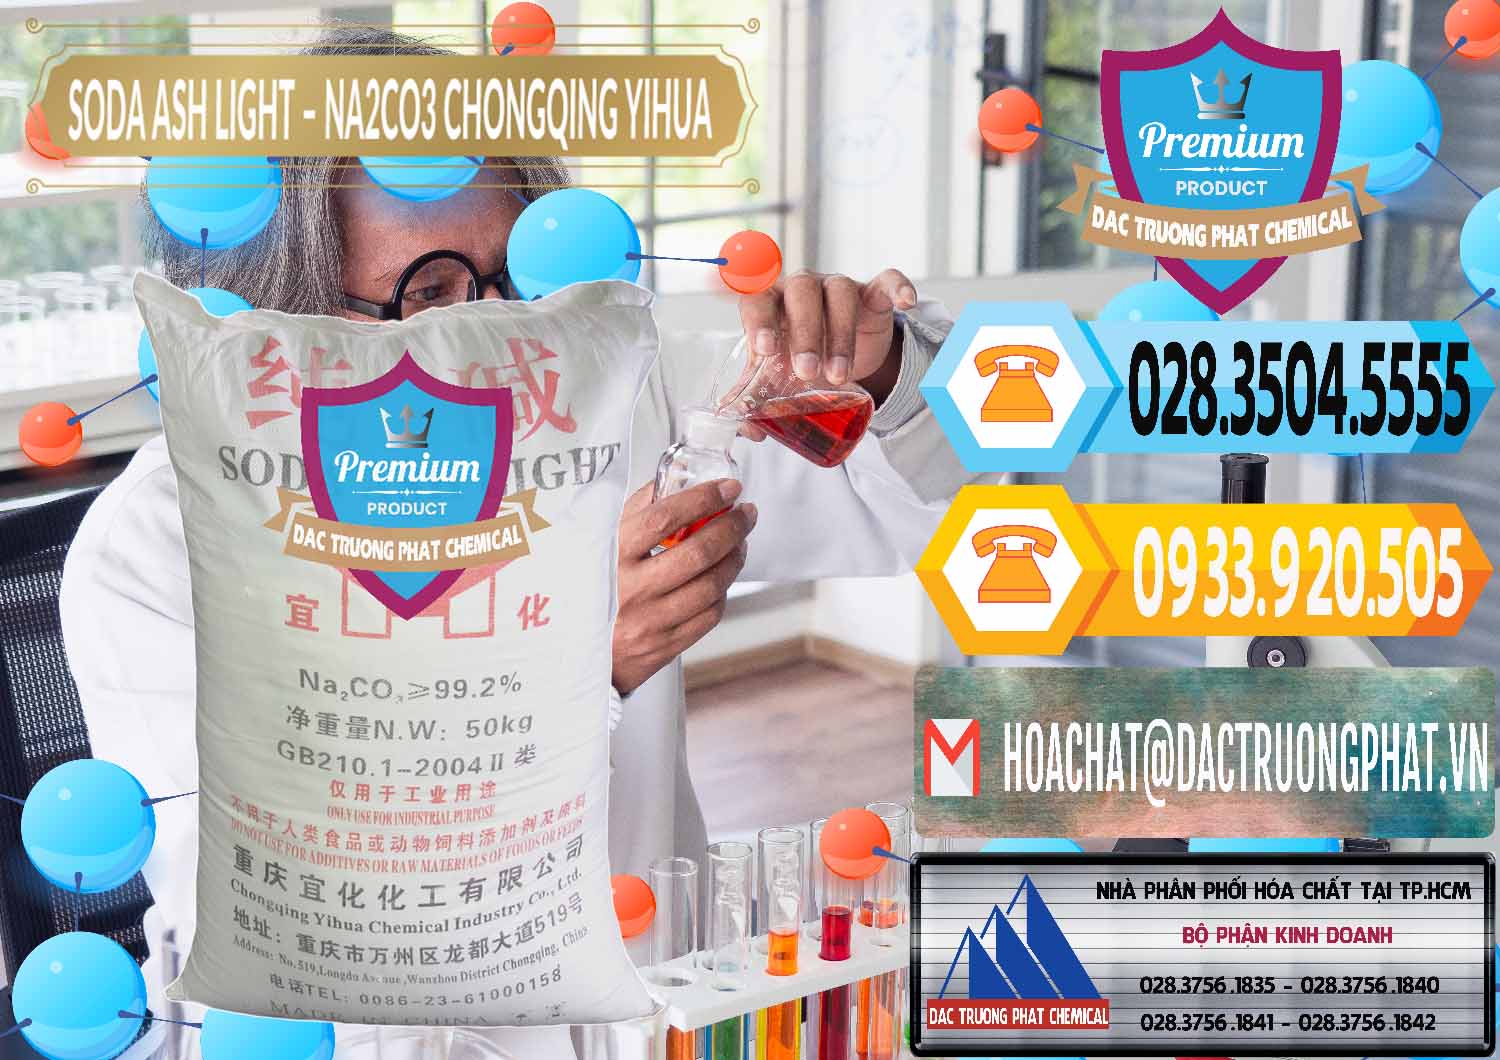 Nơi cung ứng và bán Soda Ash Light - NA2CO3 Chongqing Yihua Trung Quốc China - 0129 - Chuyên bán & cung cấp hóa chất tại TP.HCM - hoachattayrua.net